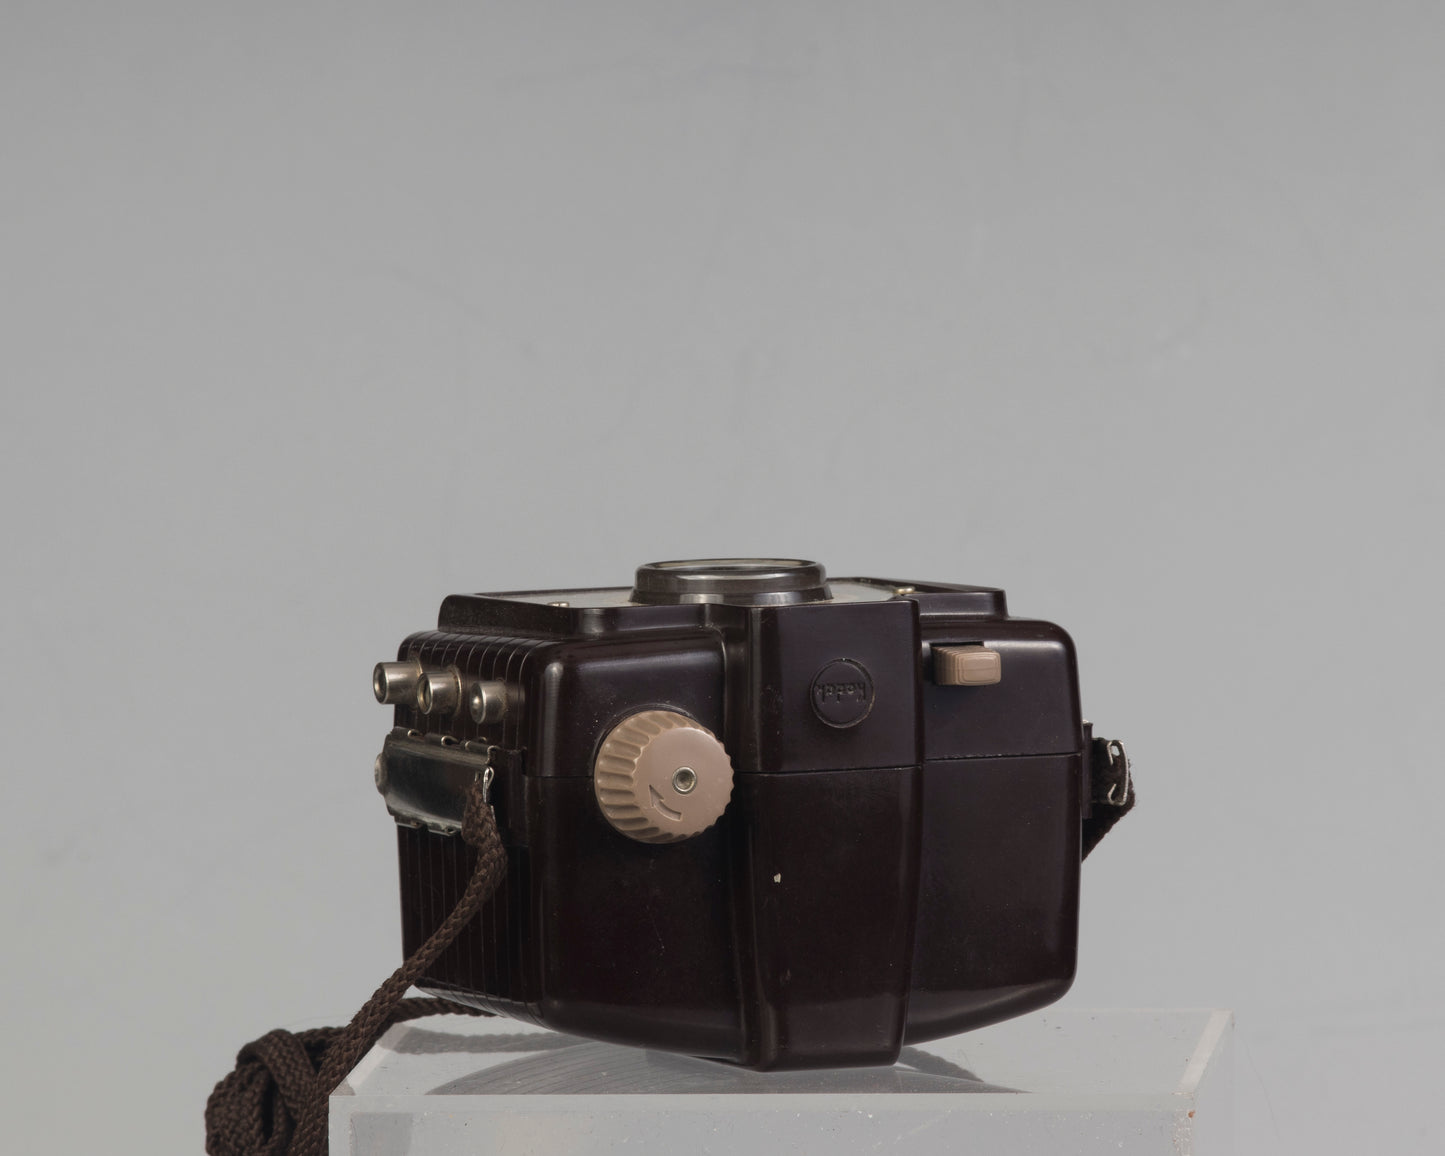 Kodak Brownie Holiday Flash avec support de flash et ampoule flash (utilise un film 127)